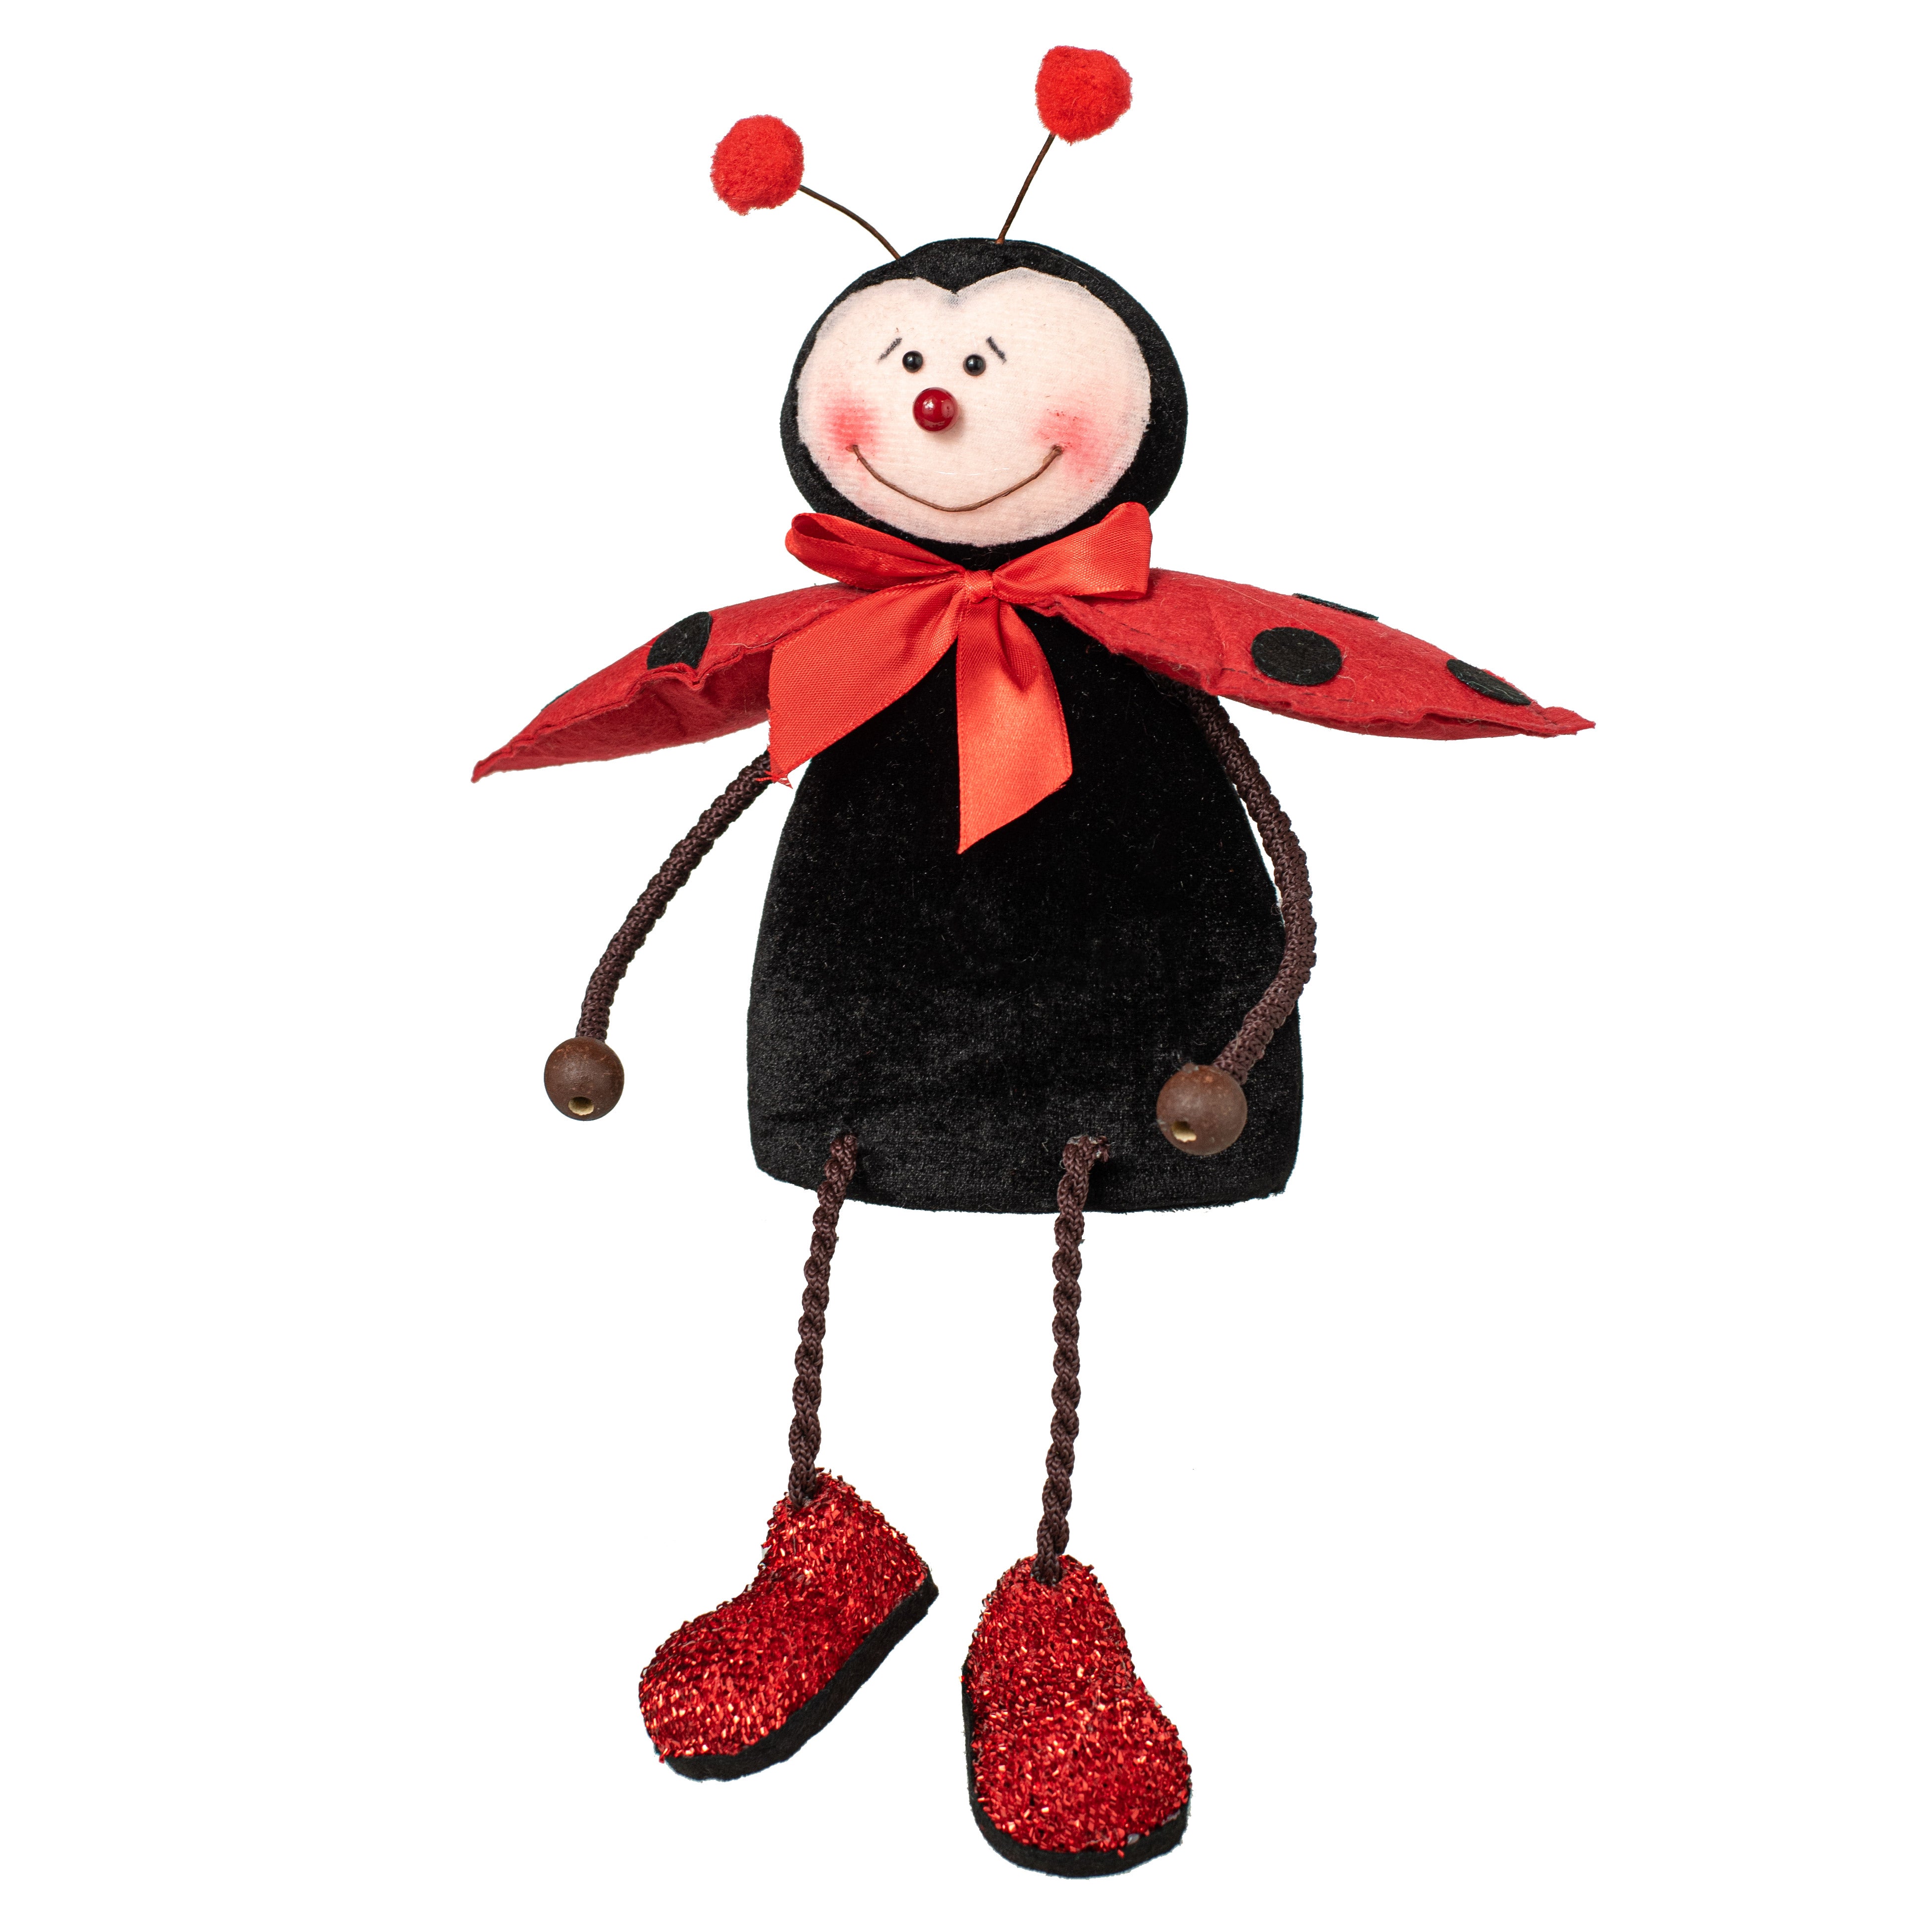 15" Sitting Ladybug Decoration